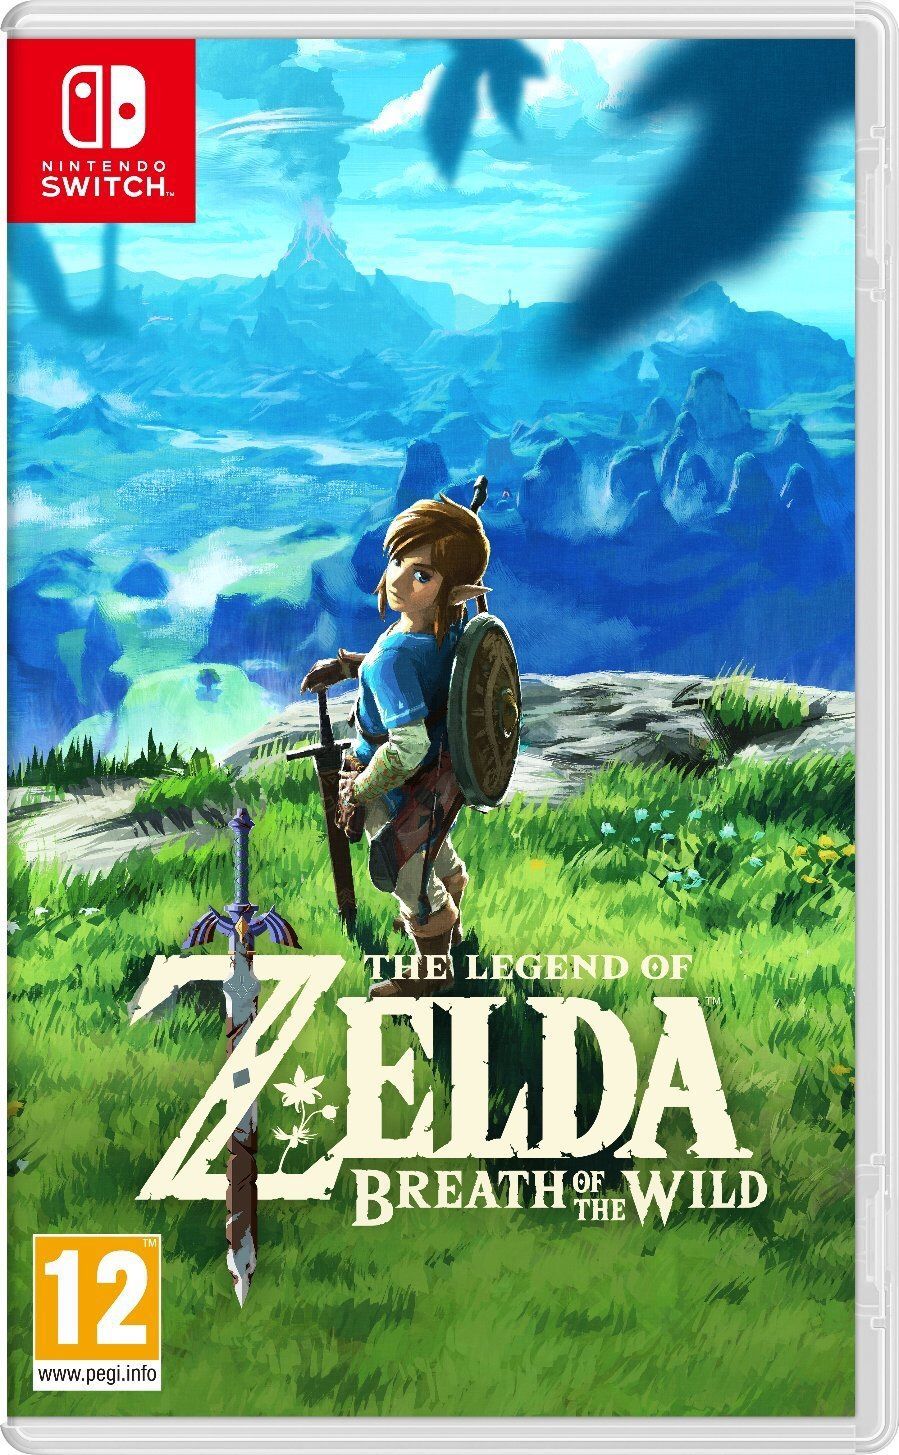 The legend of Zelda Nintendo switch